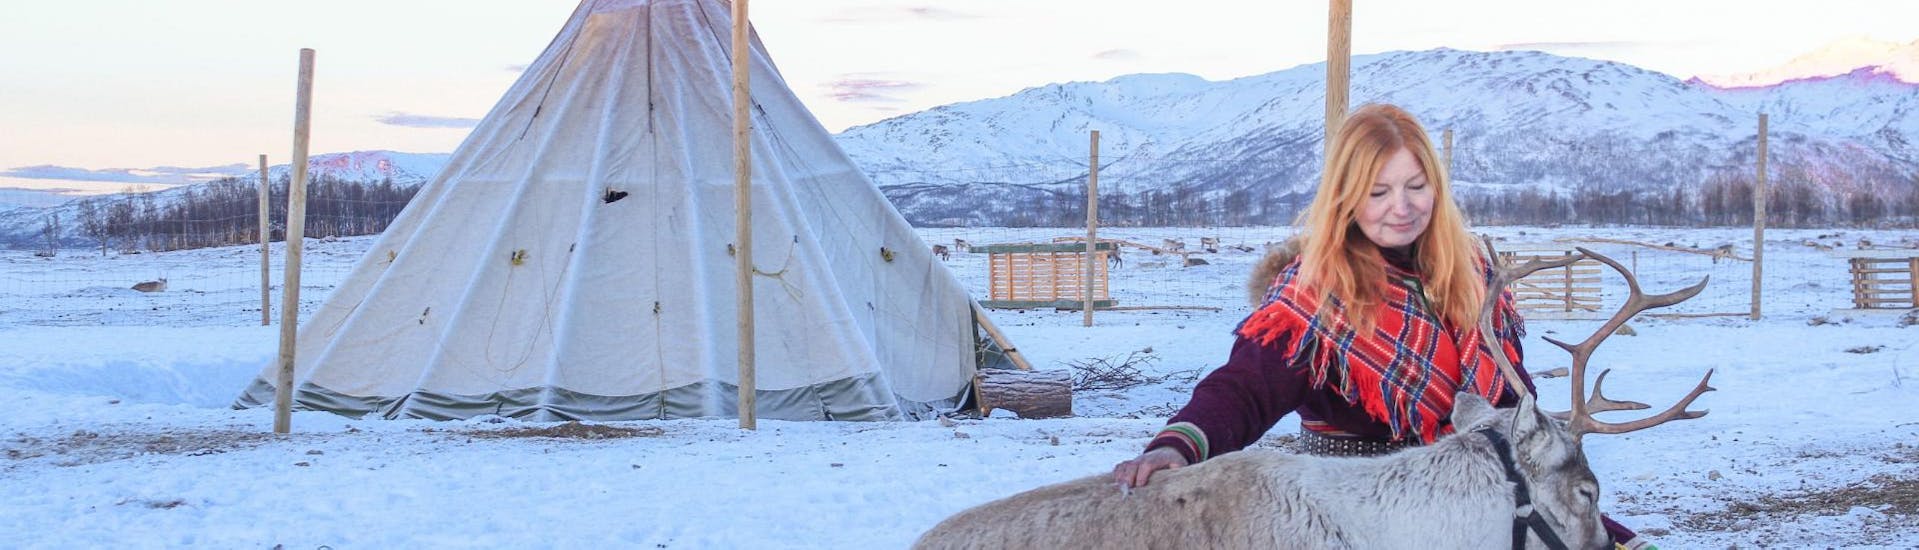 Durante la Serata al campo Sami e nutrimento delle renne a Tromsø, Una donna in abiti tradizionali sami dà da mangiare alle renne nel campo gestito da Tromsø Arctic Reindeer.